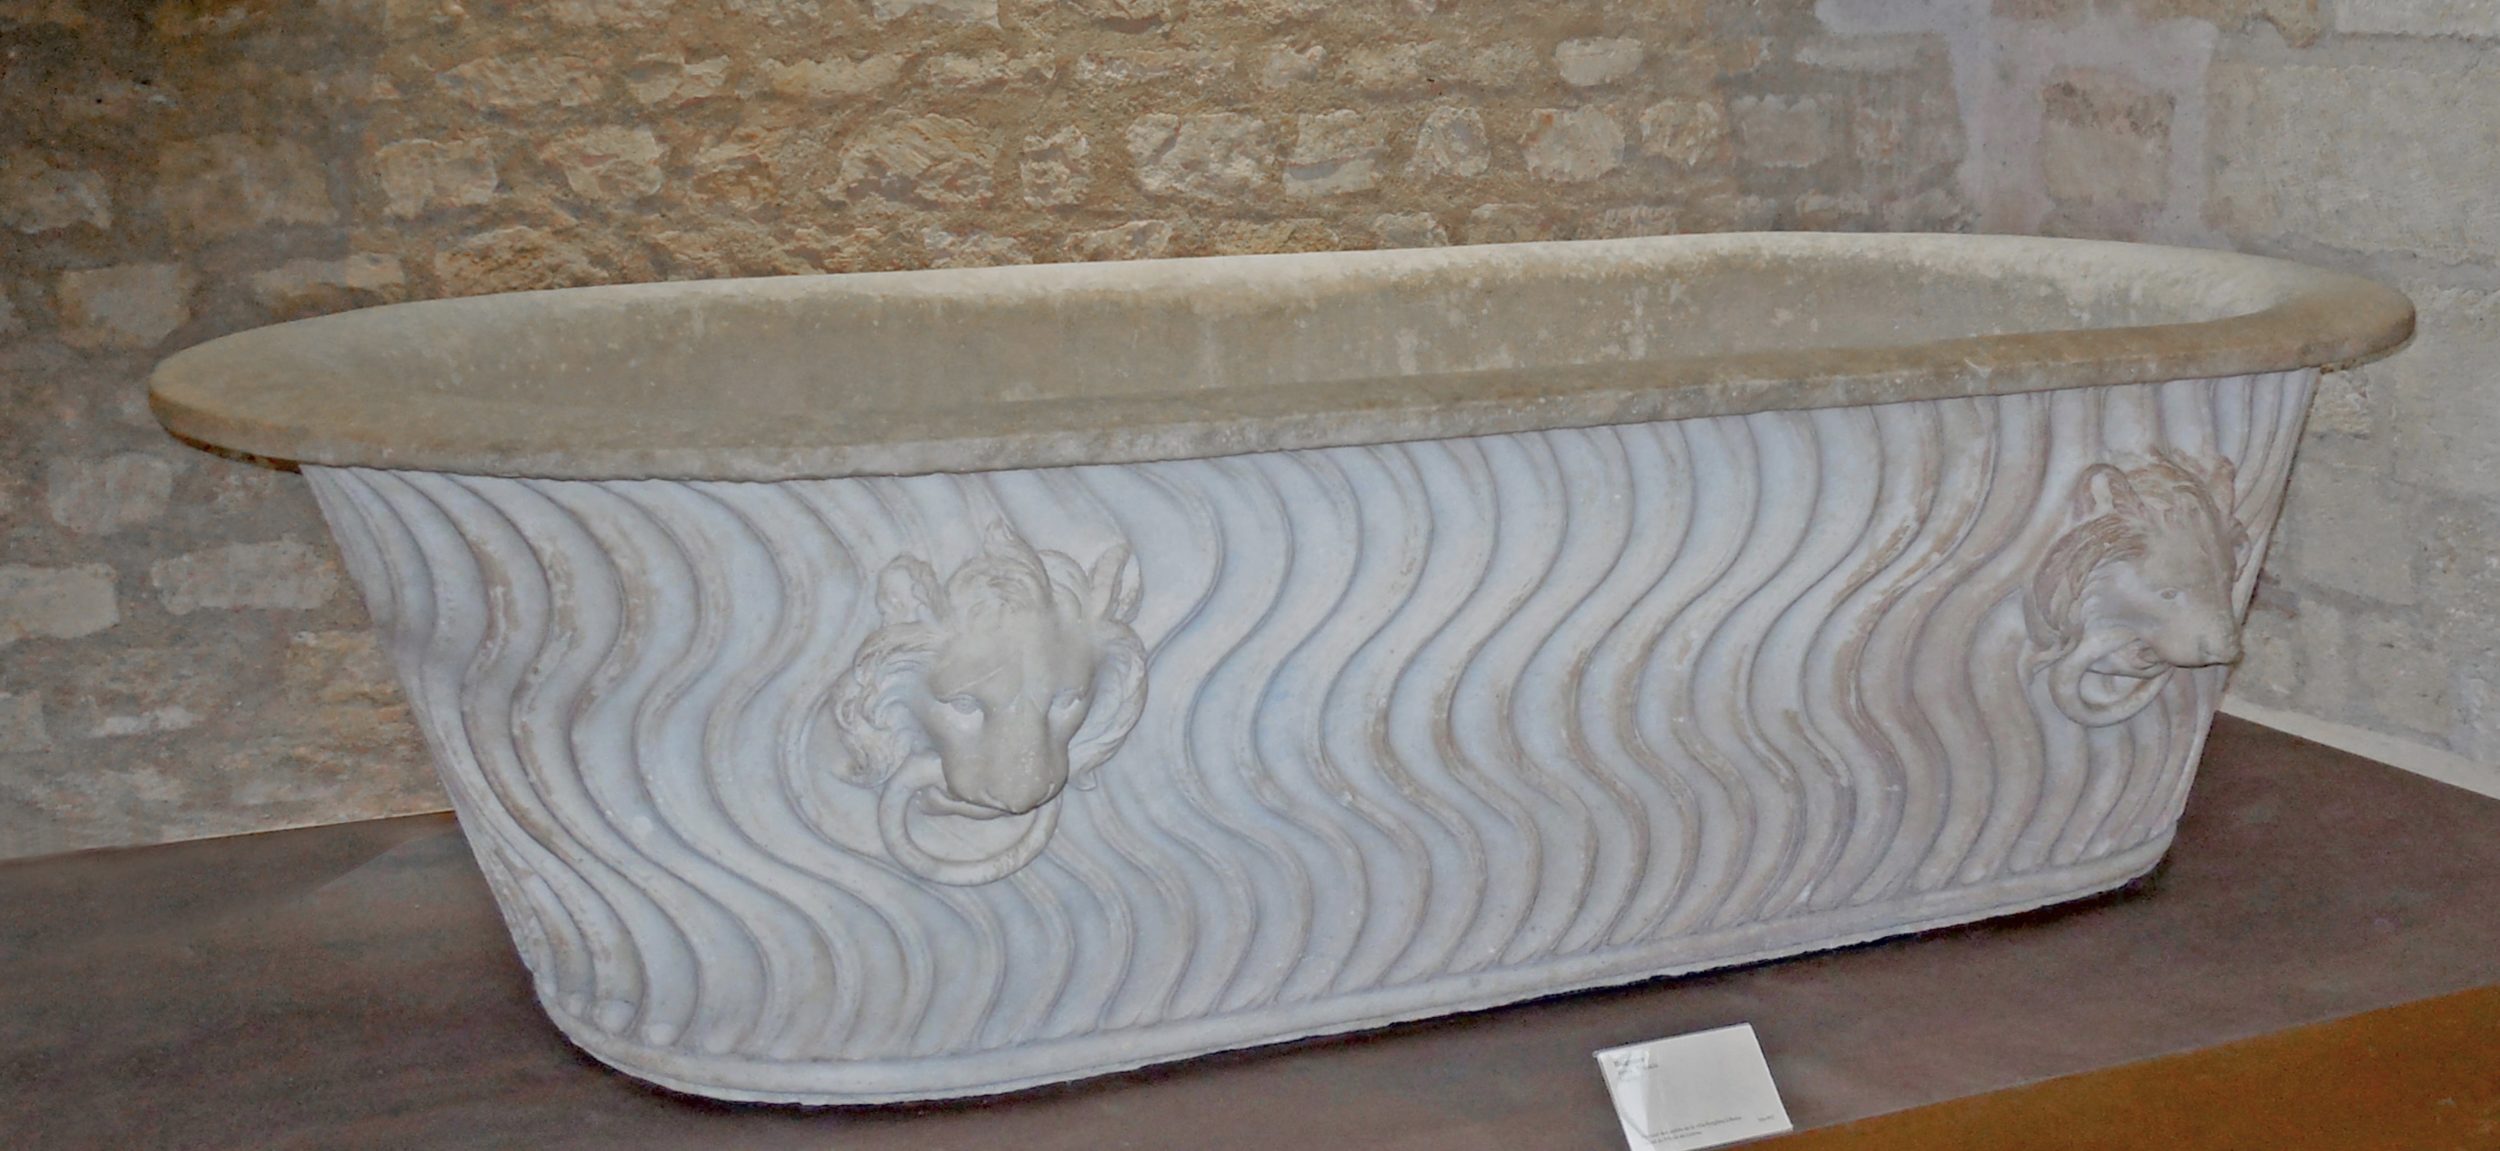 Baignoire en marbre, Italie Ier - IIIe siècle. Musée de Cluny, Paris.